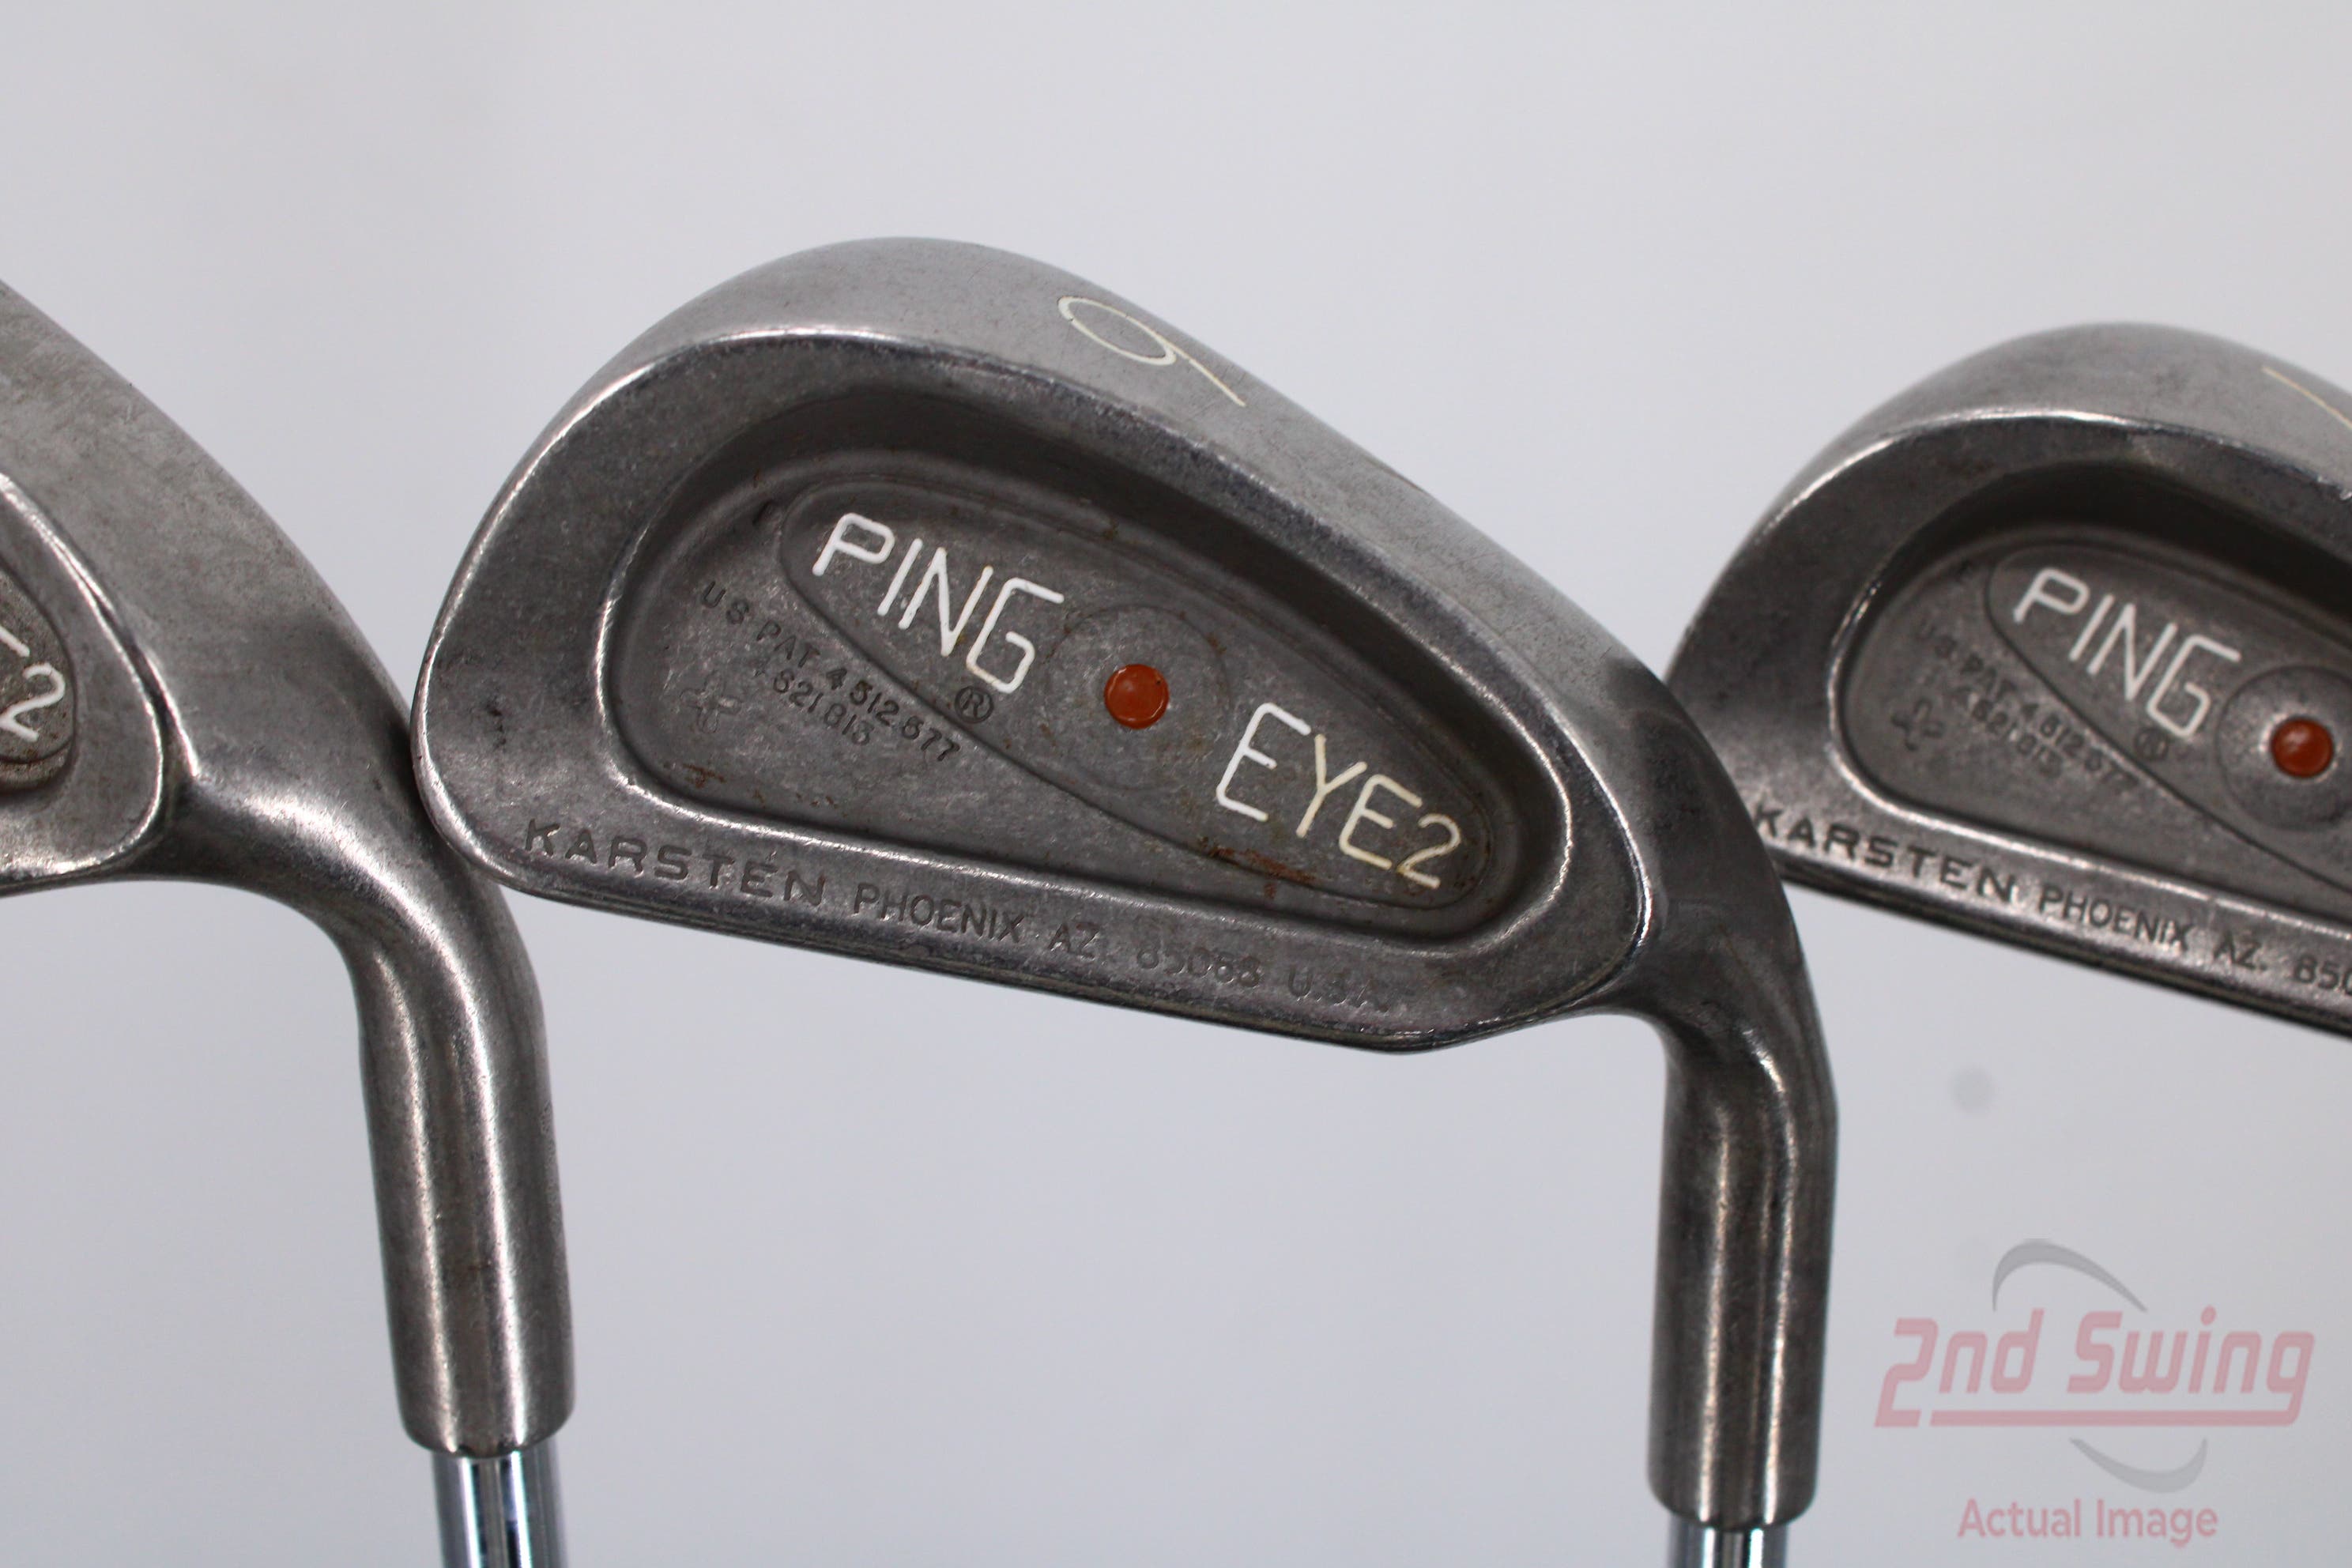 Ping Eye 2 + Iron Set (D-N2227181860)